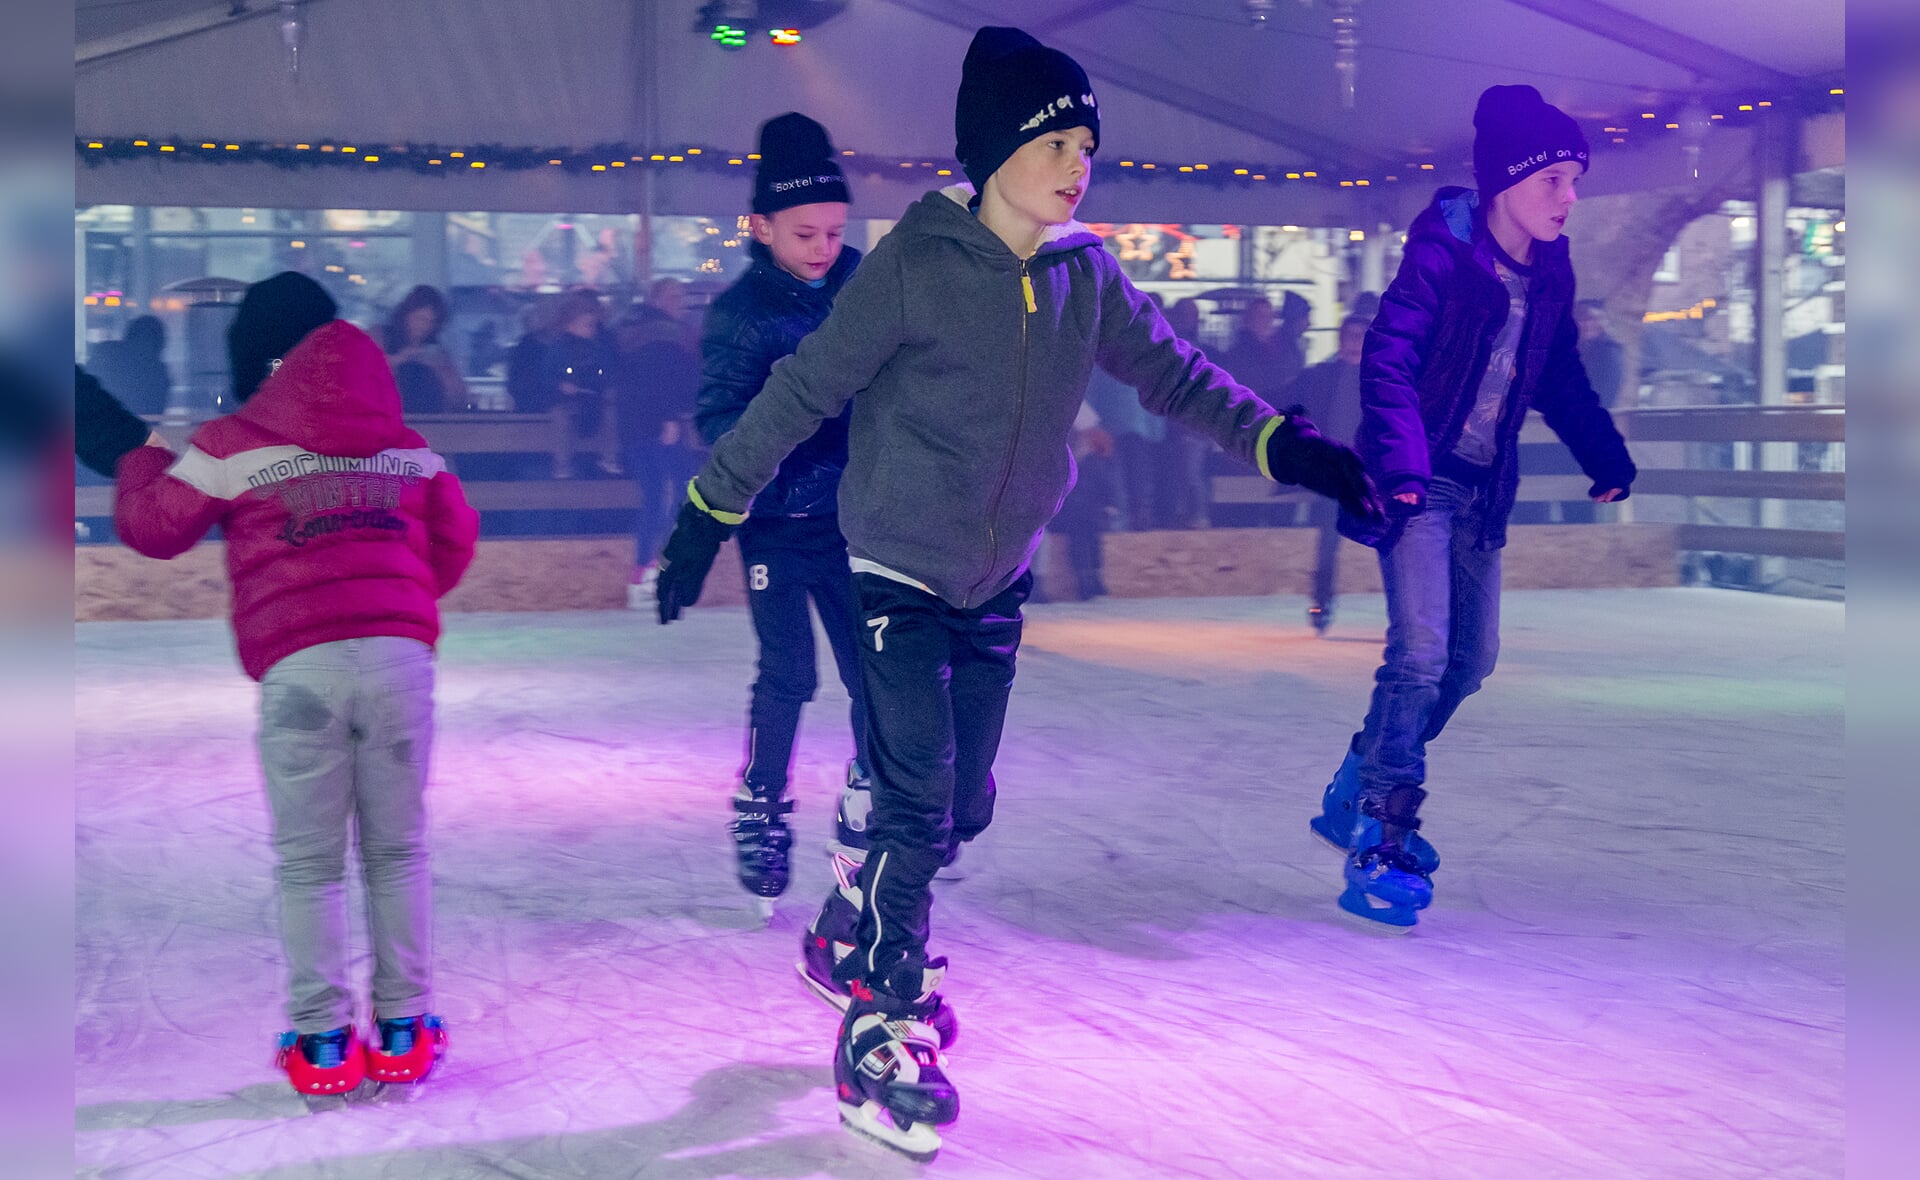 Schaatsbaan Boxtel on Ice is woensdag 4 januari het decor van Kwekpoel on Ice, een muzikaal en vermakelijk jeugdfestijn dat wordt georganiseerd door De Knokkers. (Foto: Peter de Koning).